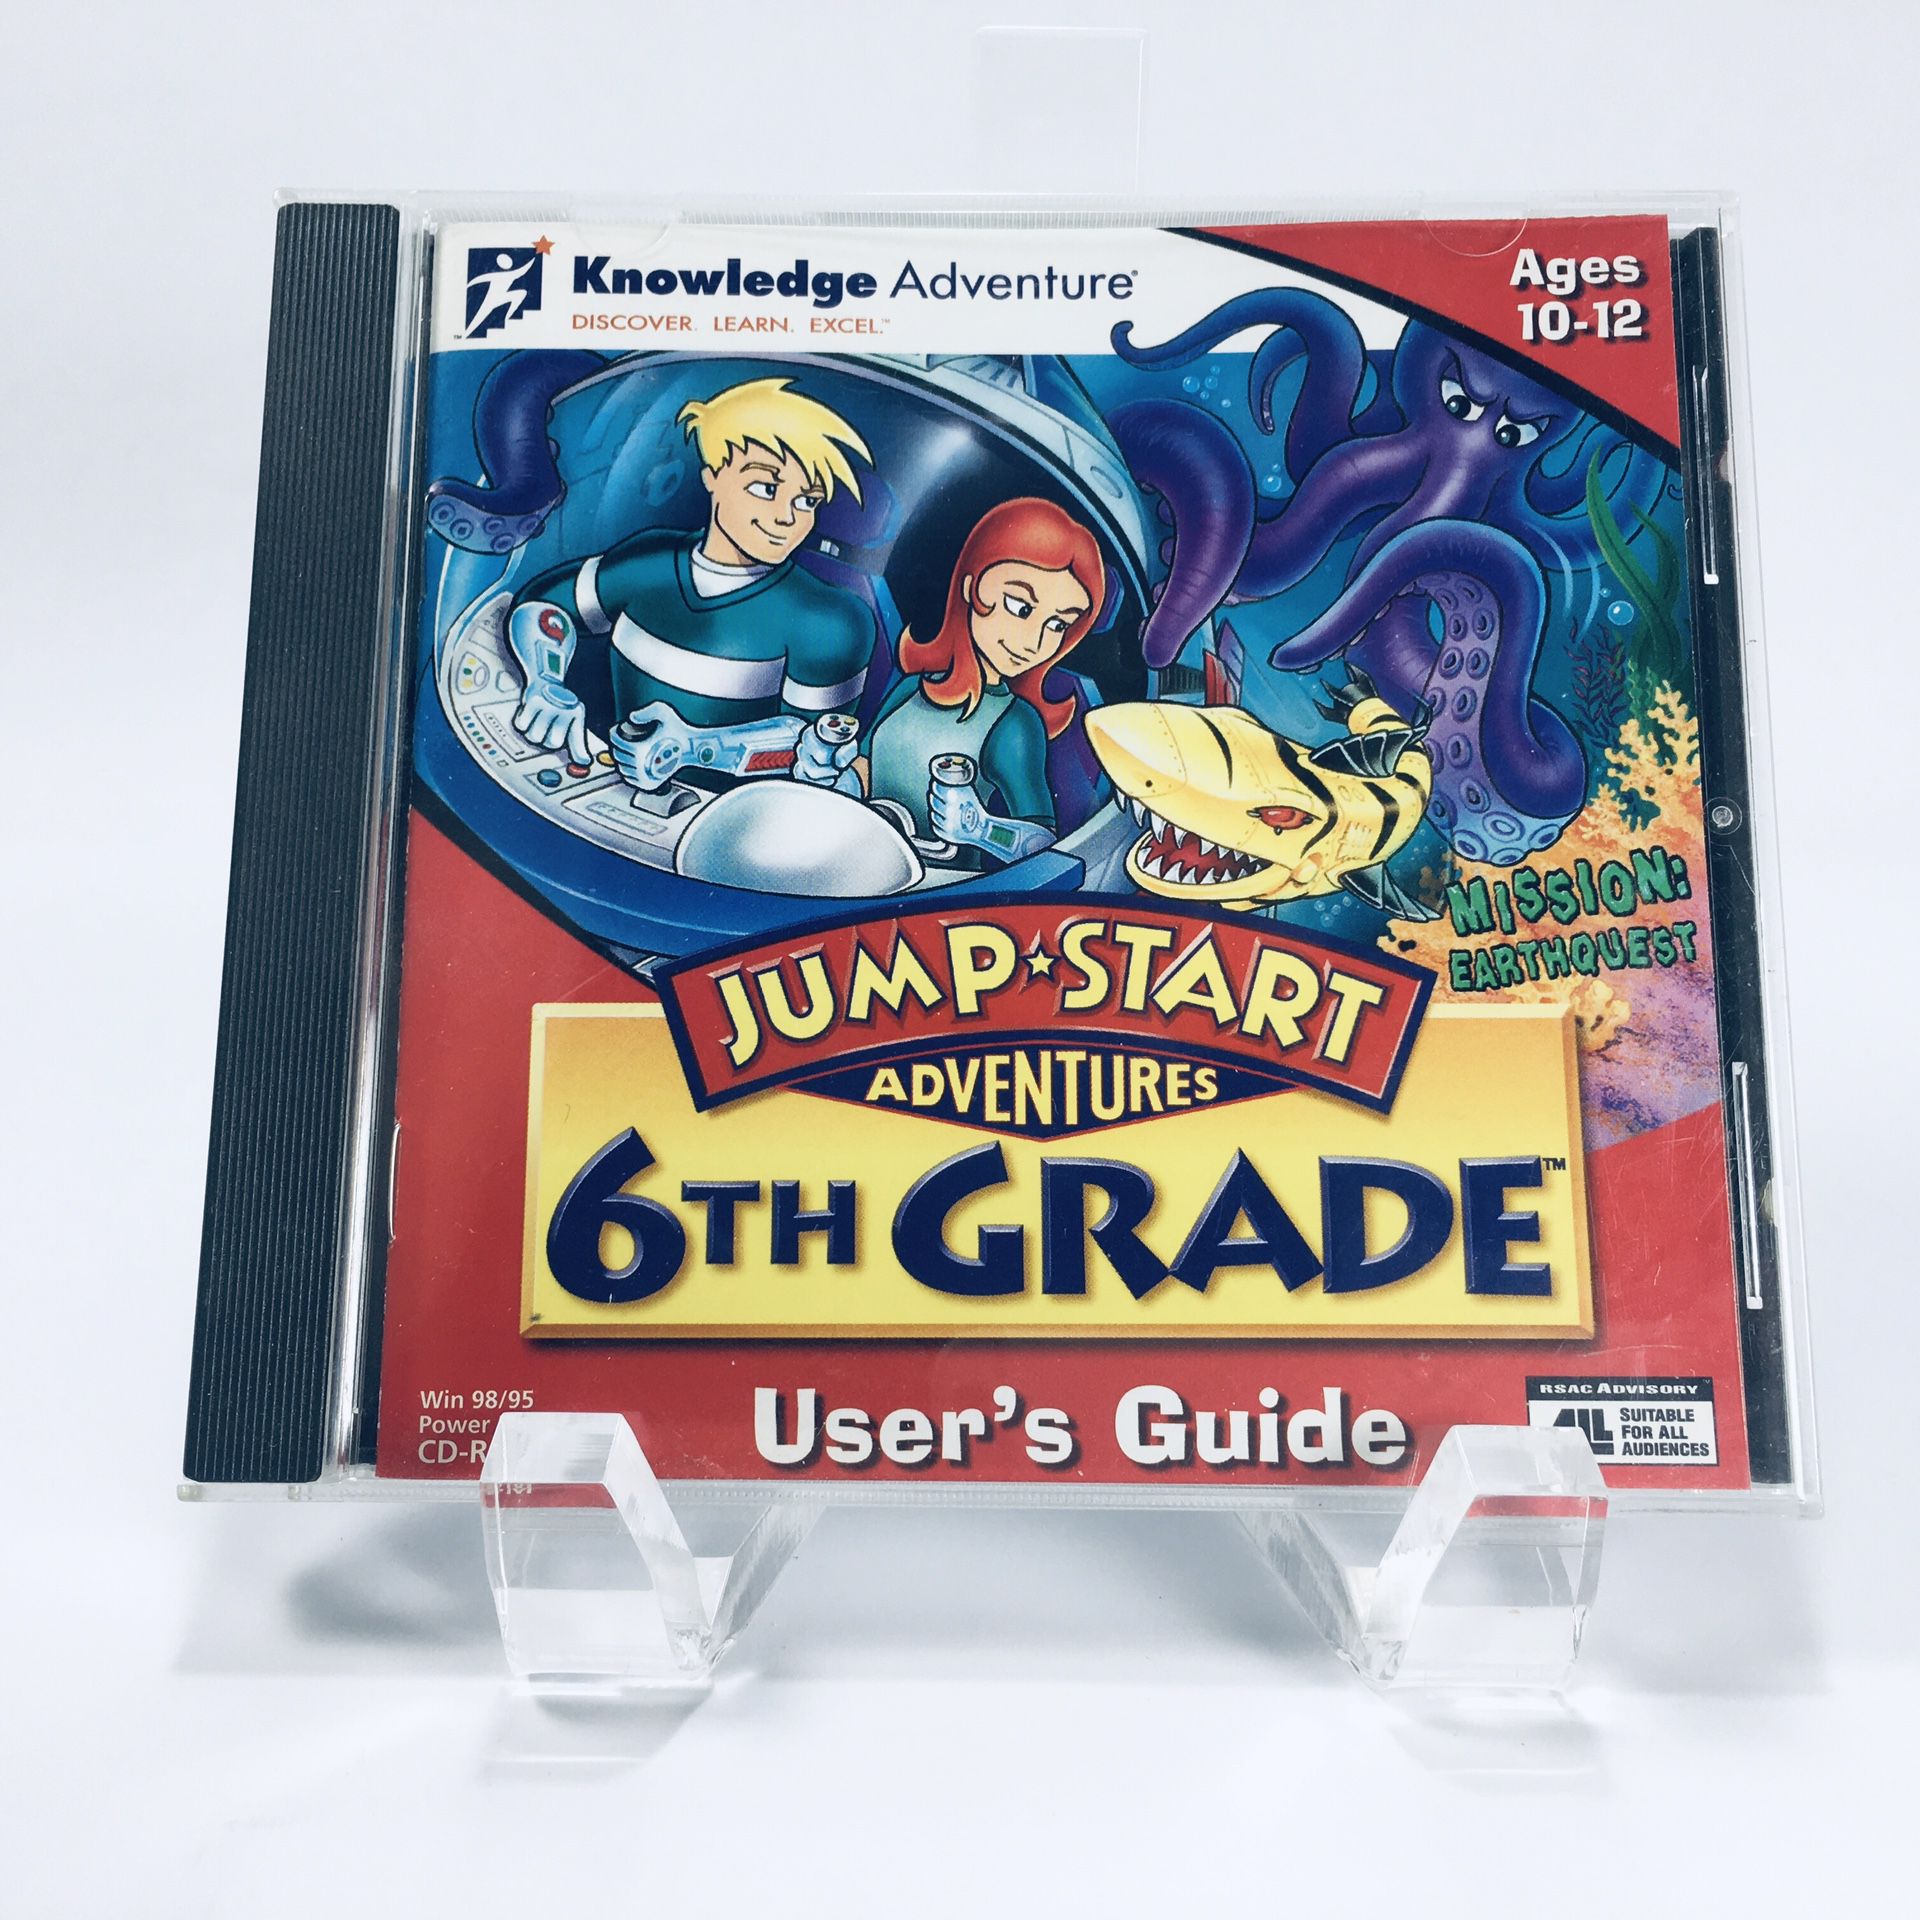 Jump Start Adventures 6th Grade User’s Guide CD-ROM